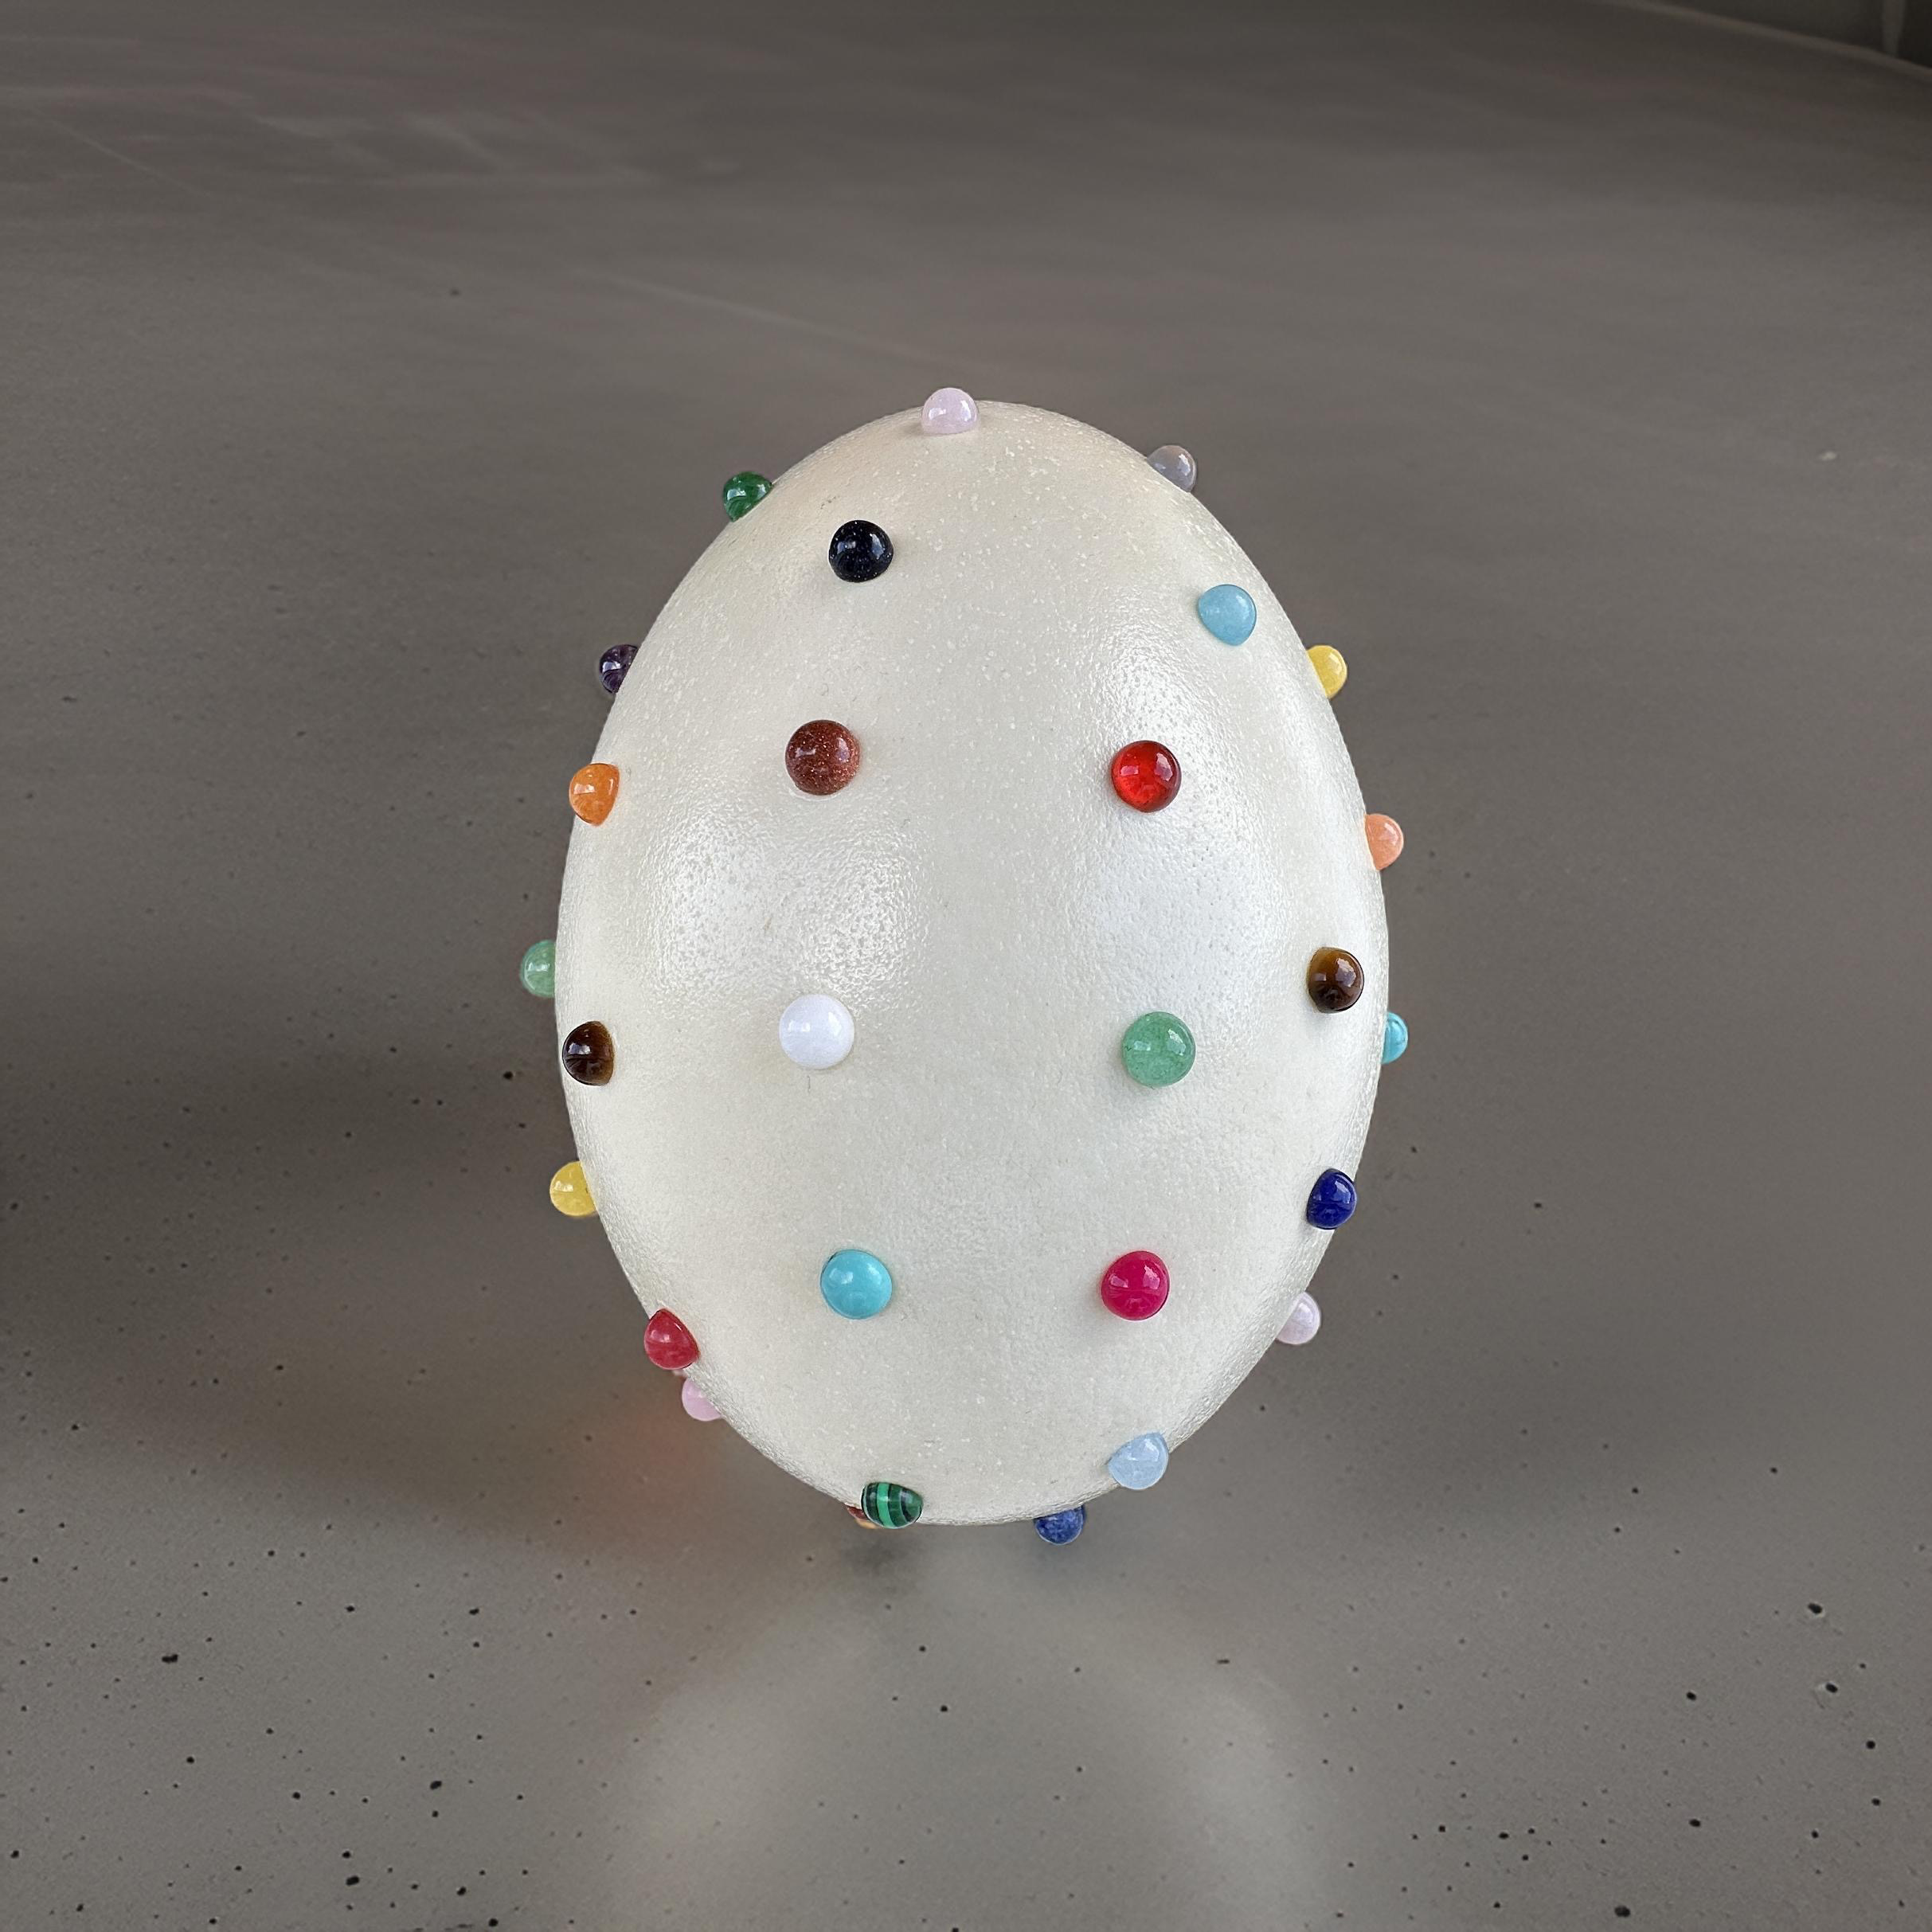 Tradition Eier zu verzieren: Ein faszinierendes Kunsthandwerk